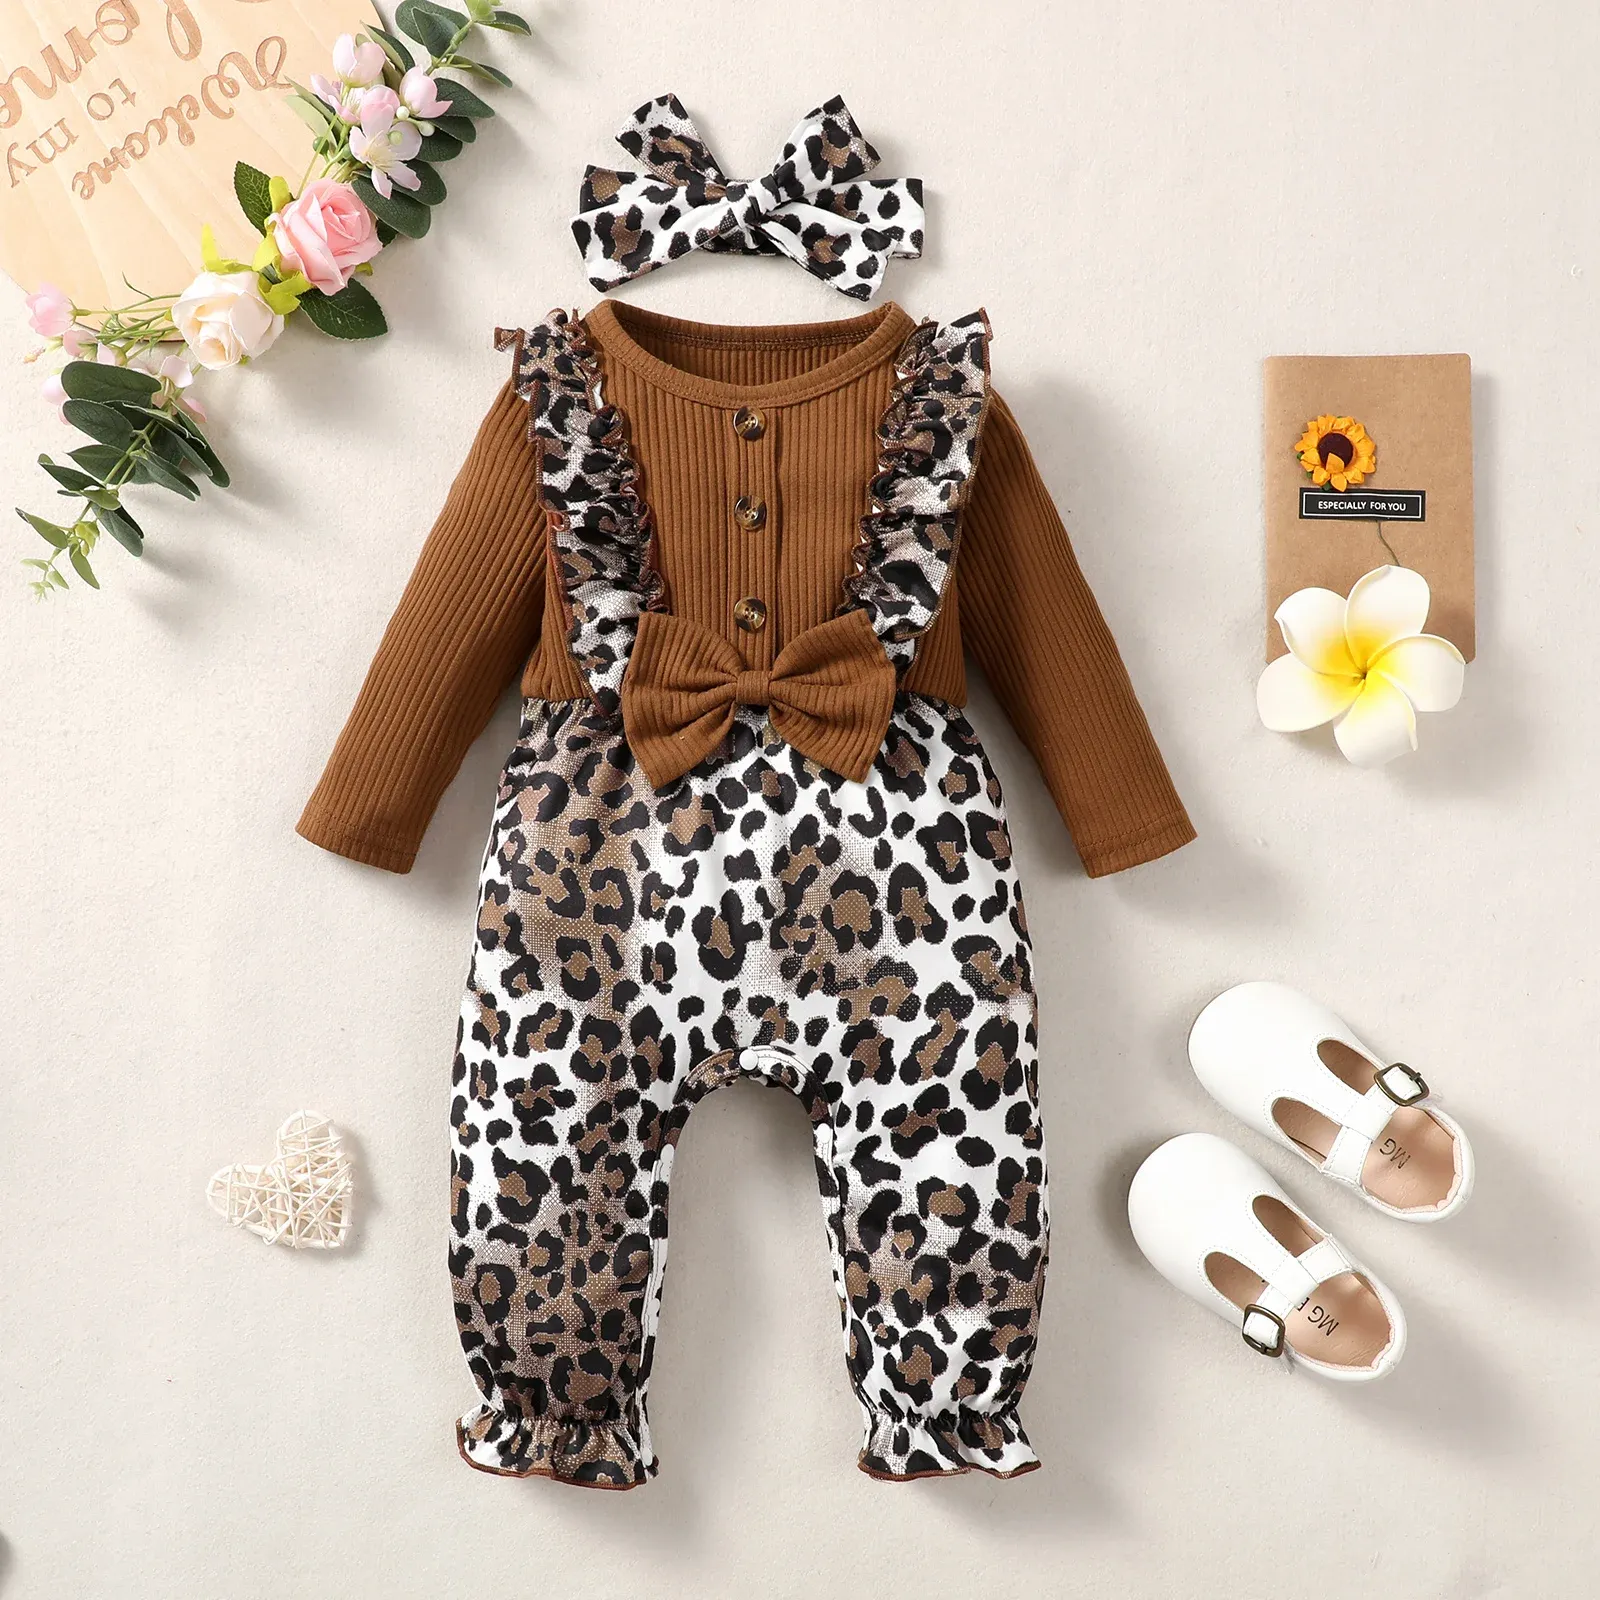 Poctuli per bambini a neonati e sezione autunnale a sezione neonata e autunno flash bottons della leopardo leopardoli